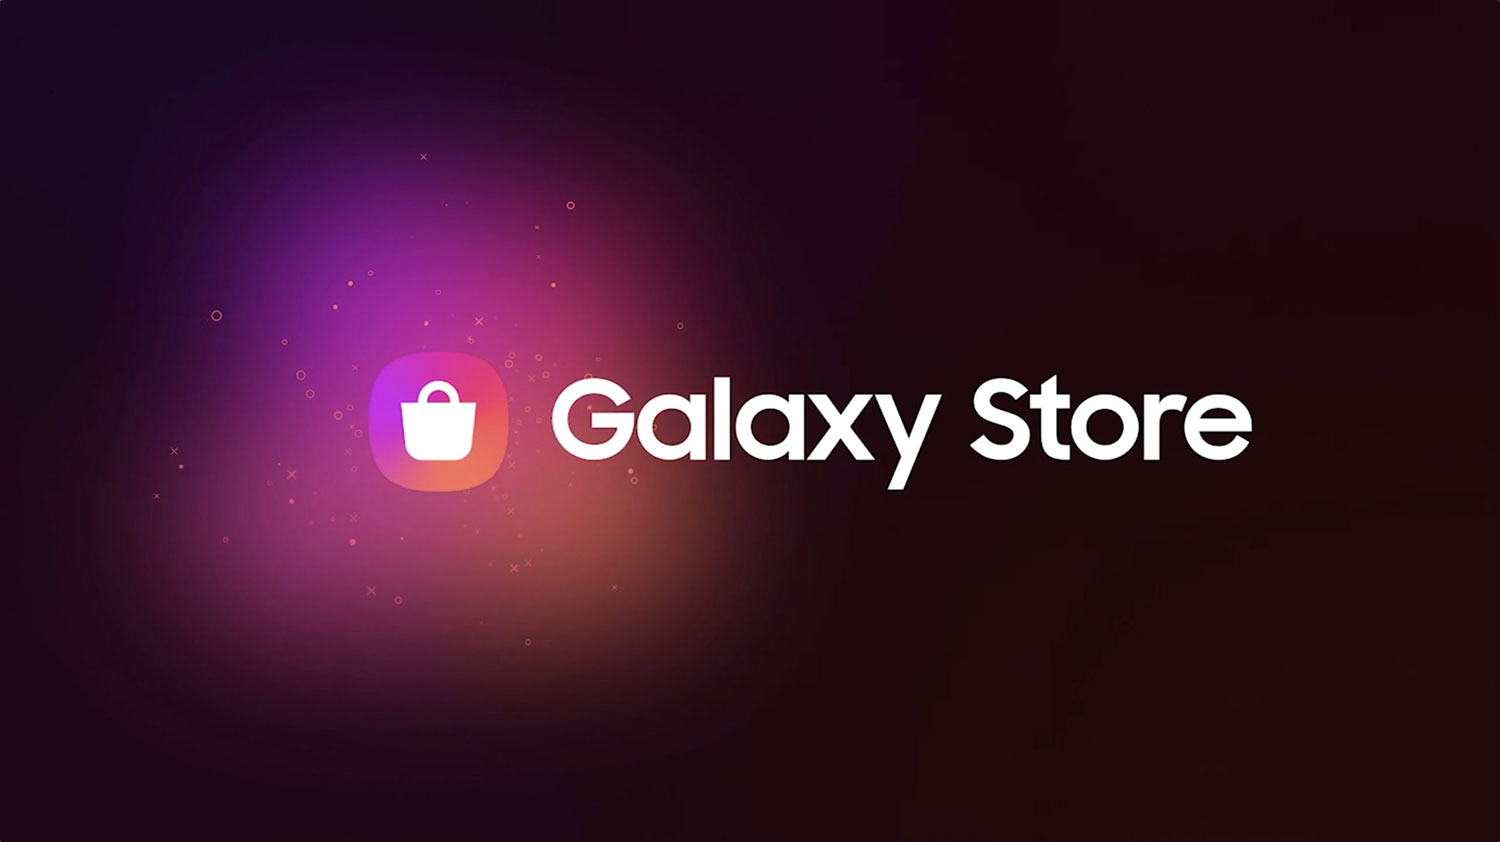 شناسایی چند نرم افزار مخرب در Galaxy Store سامسونگ